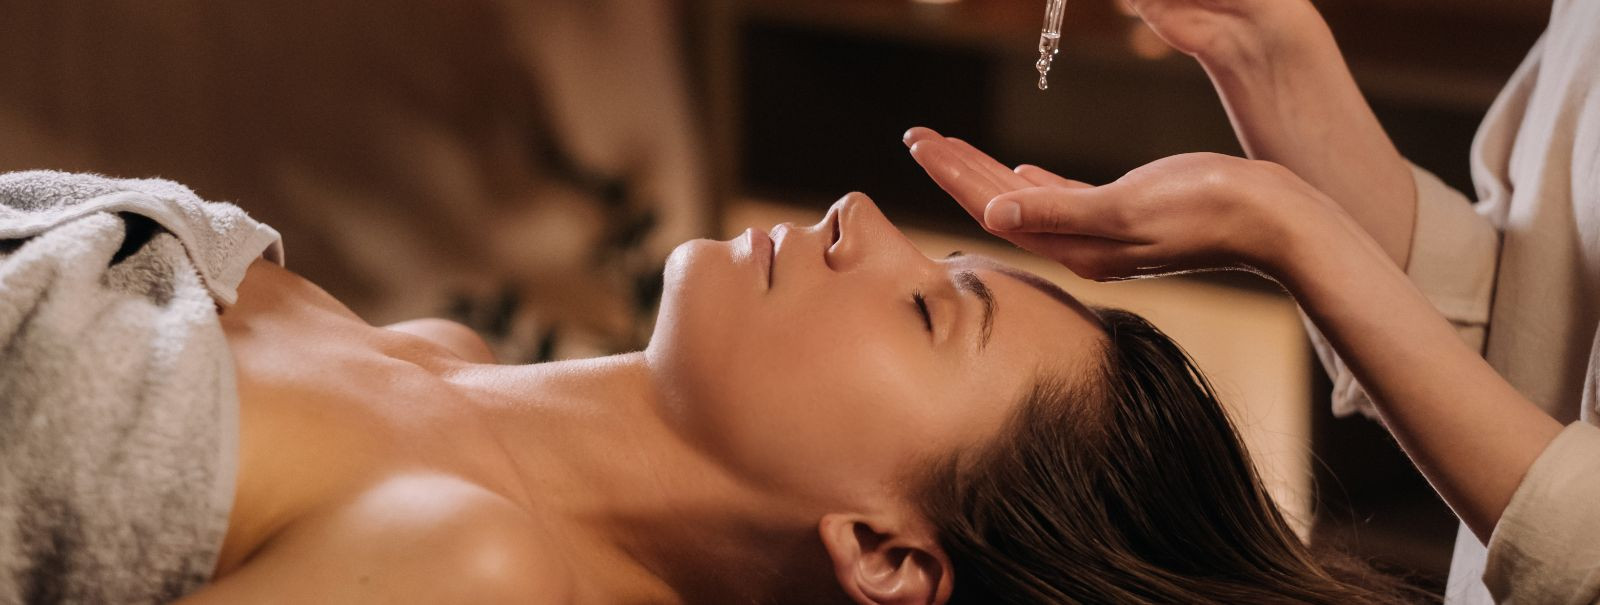 Aroomimassaaž, tuntud ka kui aroomiteraapia massaaž, on terapeutiline ...